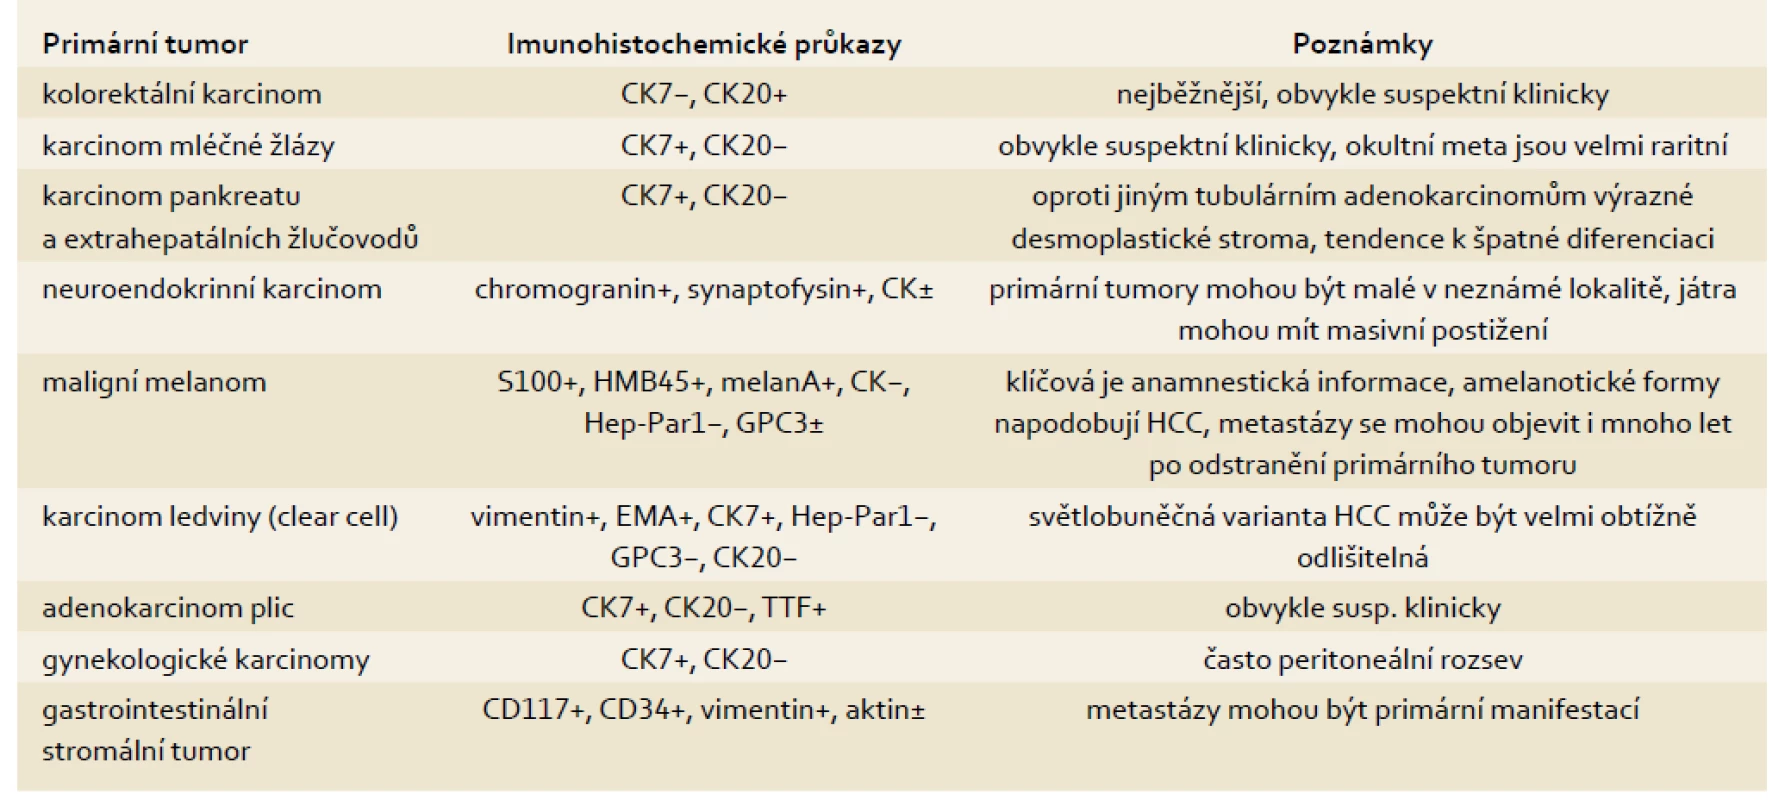 Metastázy nádorů, které běžně postihují játra (mimo lymfomy).
Tab. 1. Metastases of tumours commonly affecting the liver (except for lymphomas).